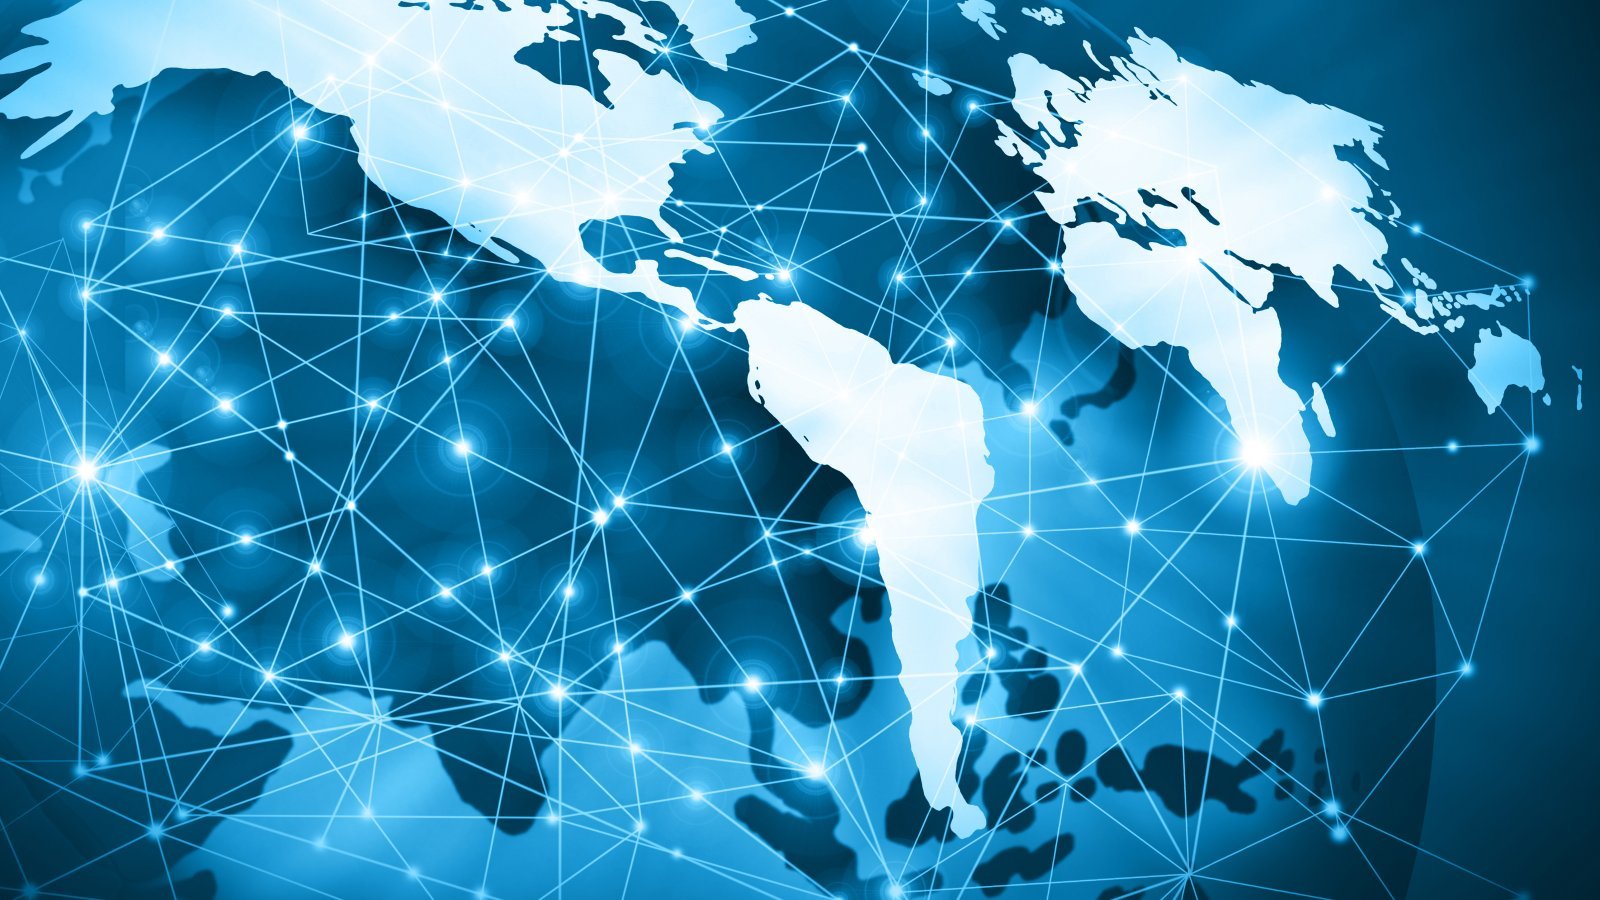 Διαδίκτυο: Συνεχείς ανακατατάξεις στον χάρτη των ταχυτήτων ίντερνετ – Πού βρίσκεται η Ελλάδα